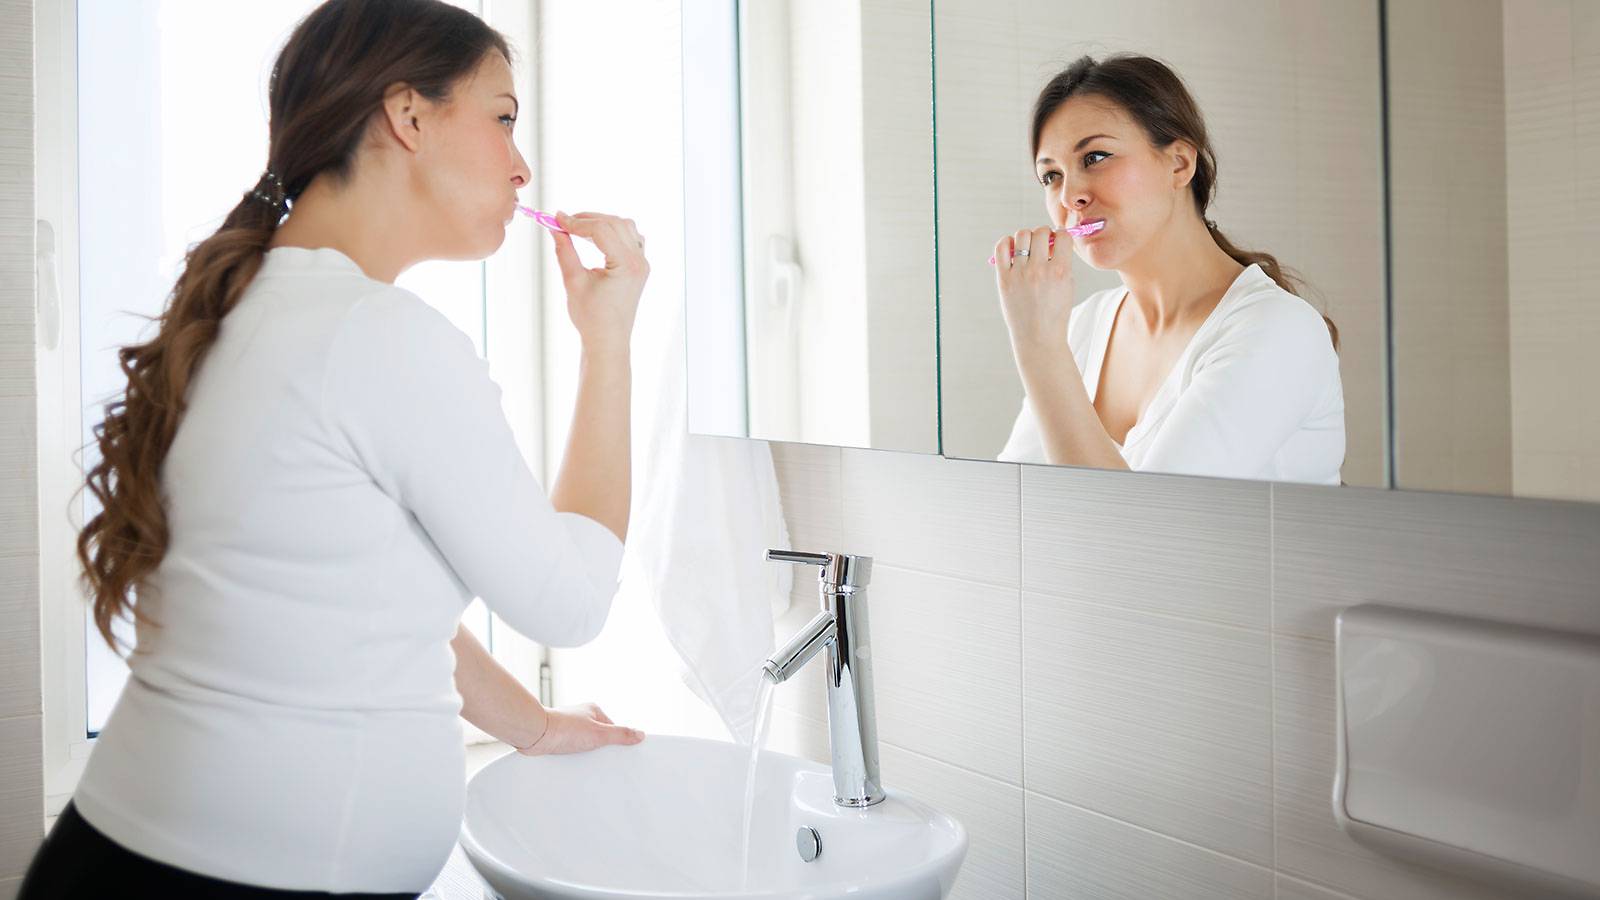 Bệnh răng miệng có ảnh hưởng gì đến thai phụ?